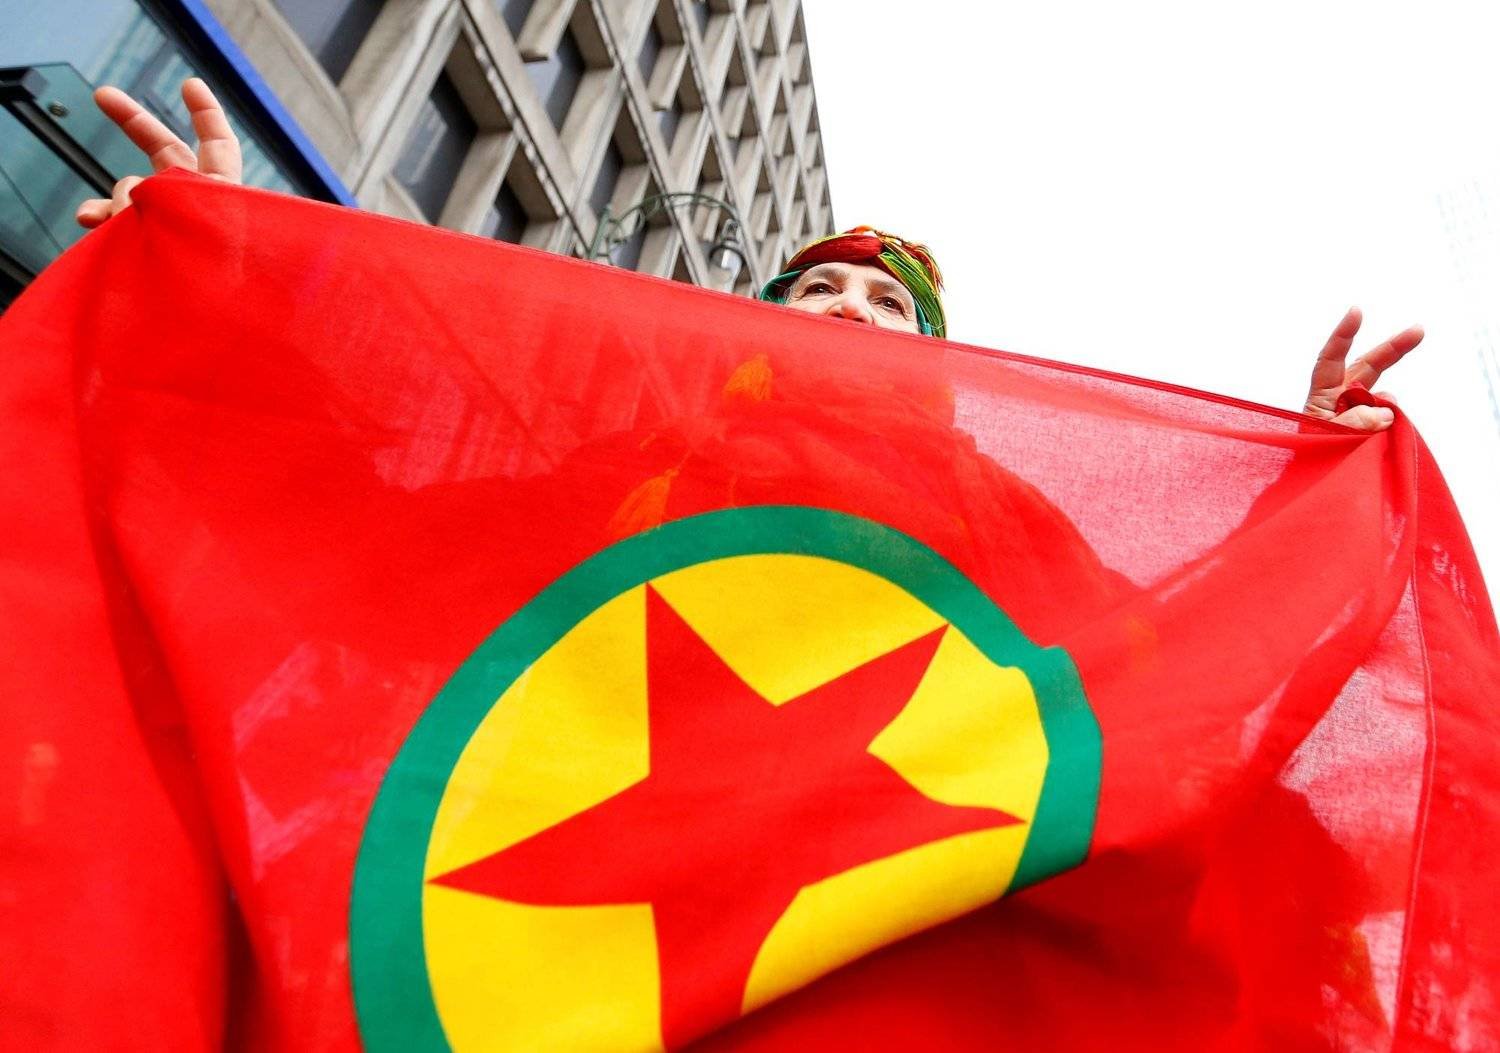 امرأة تحمل علم حزب «العمال» الكردستاني خلال مظاهرة ضد الرئيس التركي رجب طيب إردوغان في وسط بروكسل بلجيكا 17 نوفمبر 2016 (أرشيفية - رويترز)